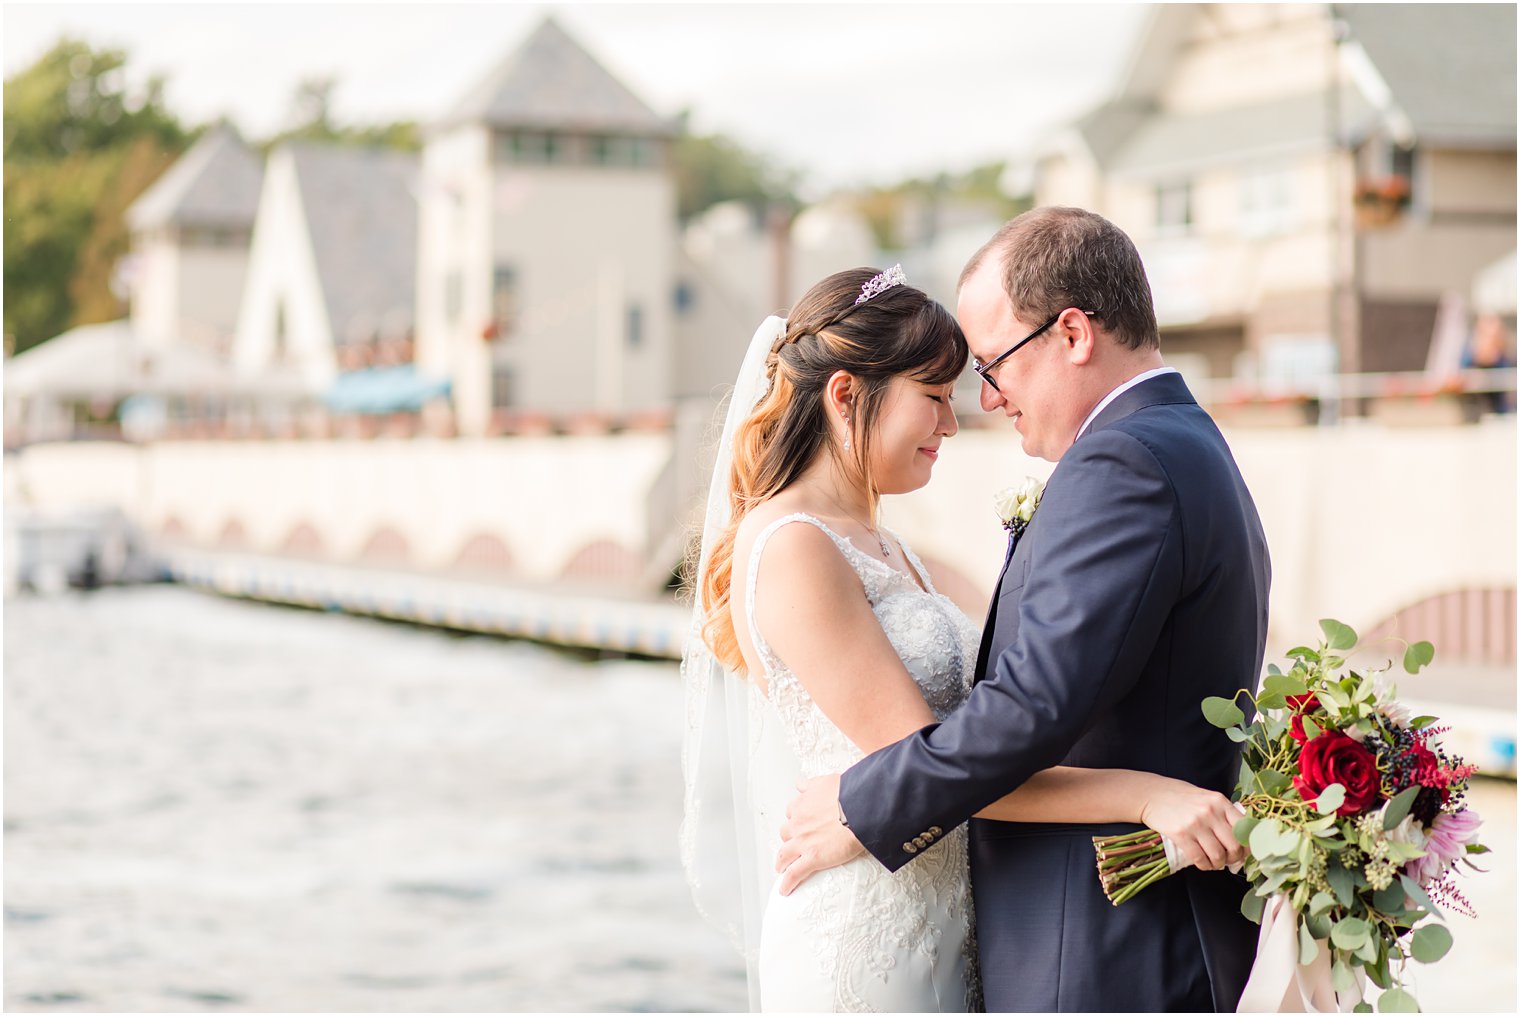 Idalia Photography photographs happy couple on Lake Mohawk wedding day